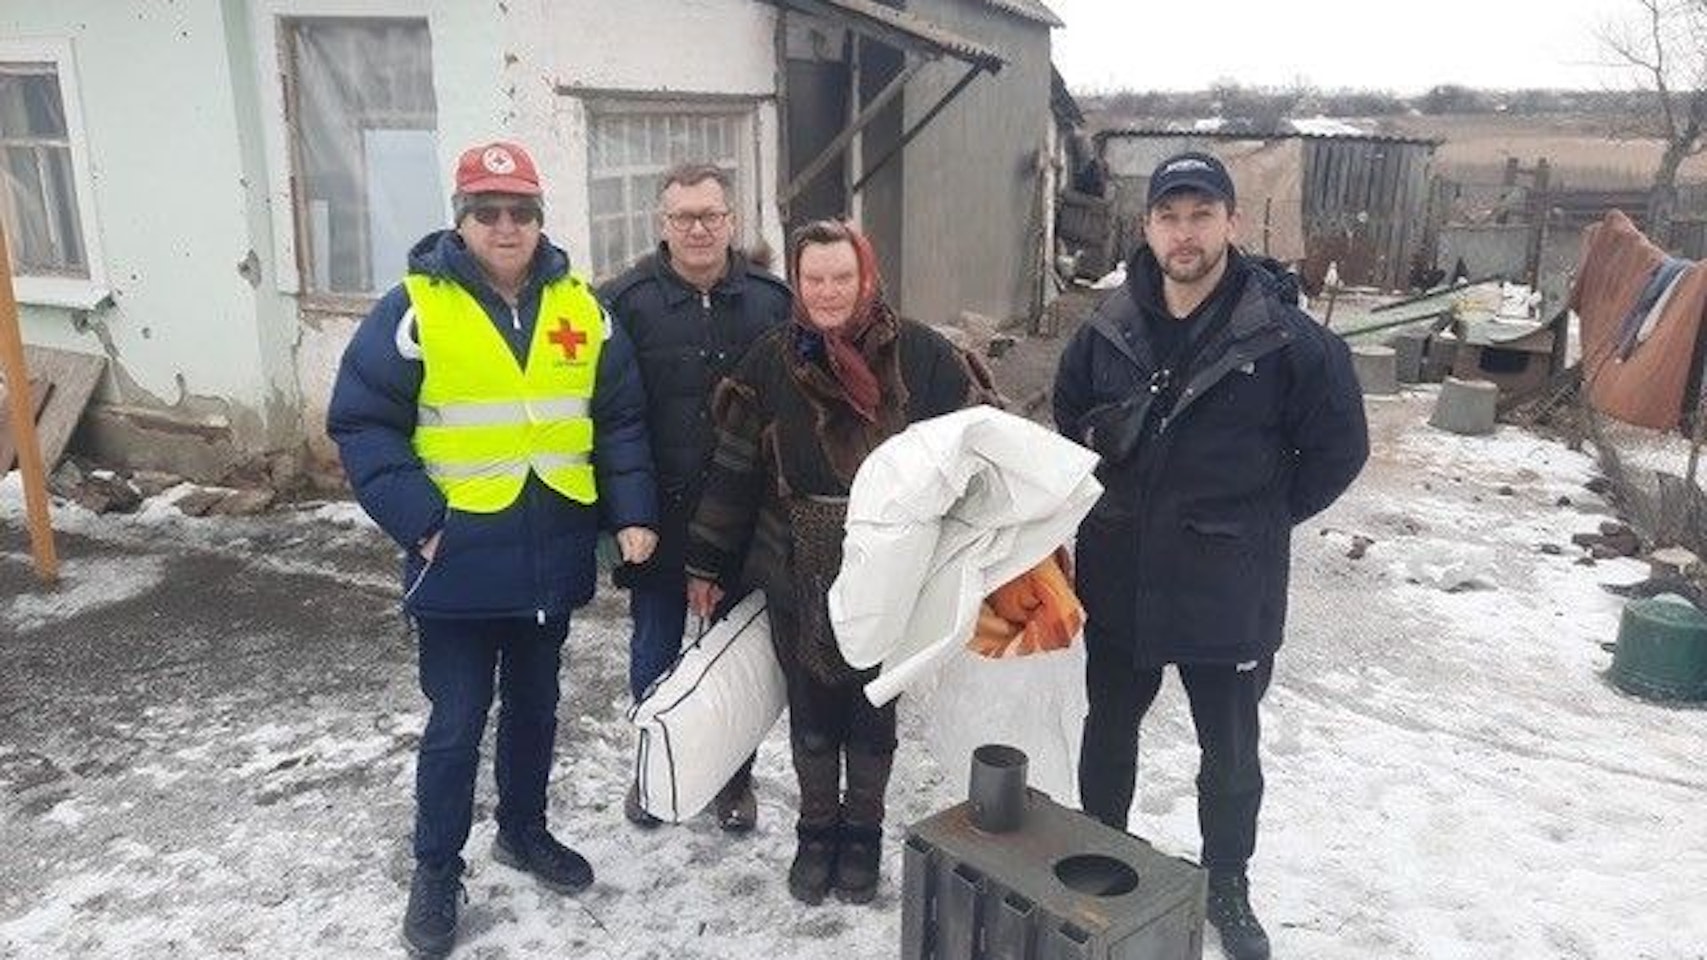 Hilfsgüter aus Rheinbach bringt Alfred Eich in die Ukraine